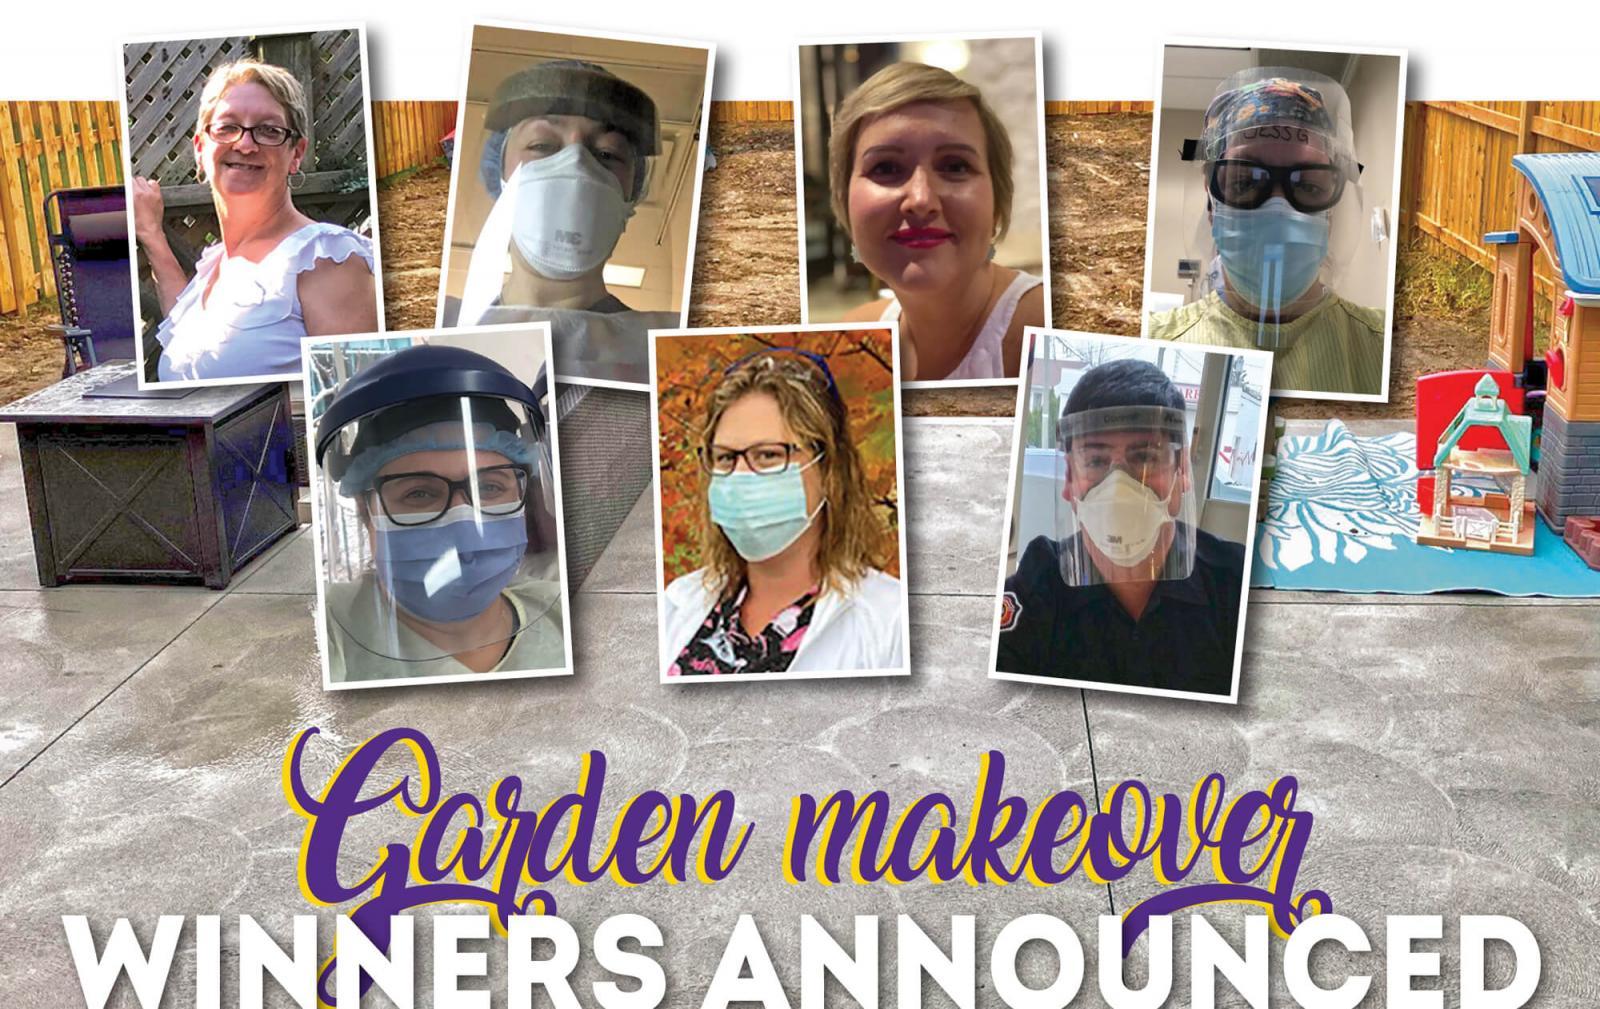 Garden makeover winners announced